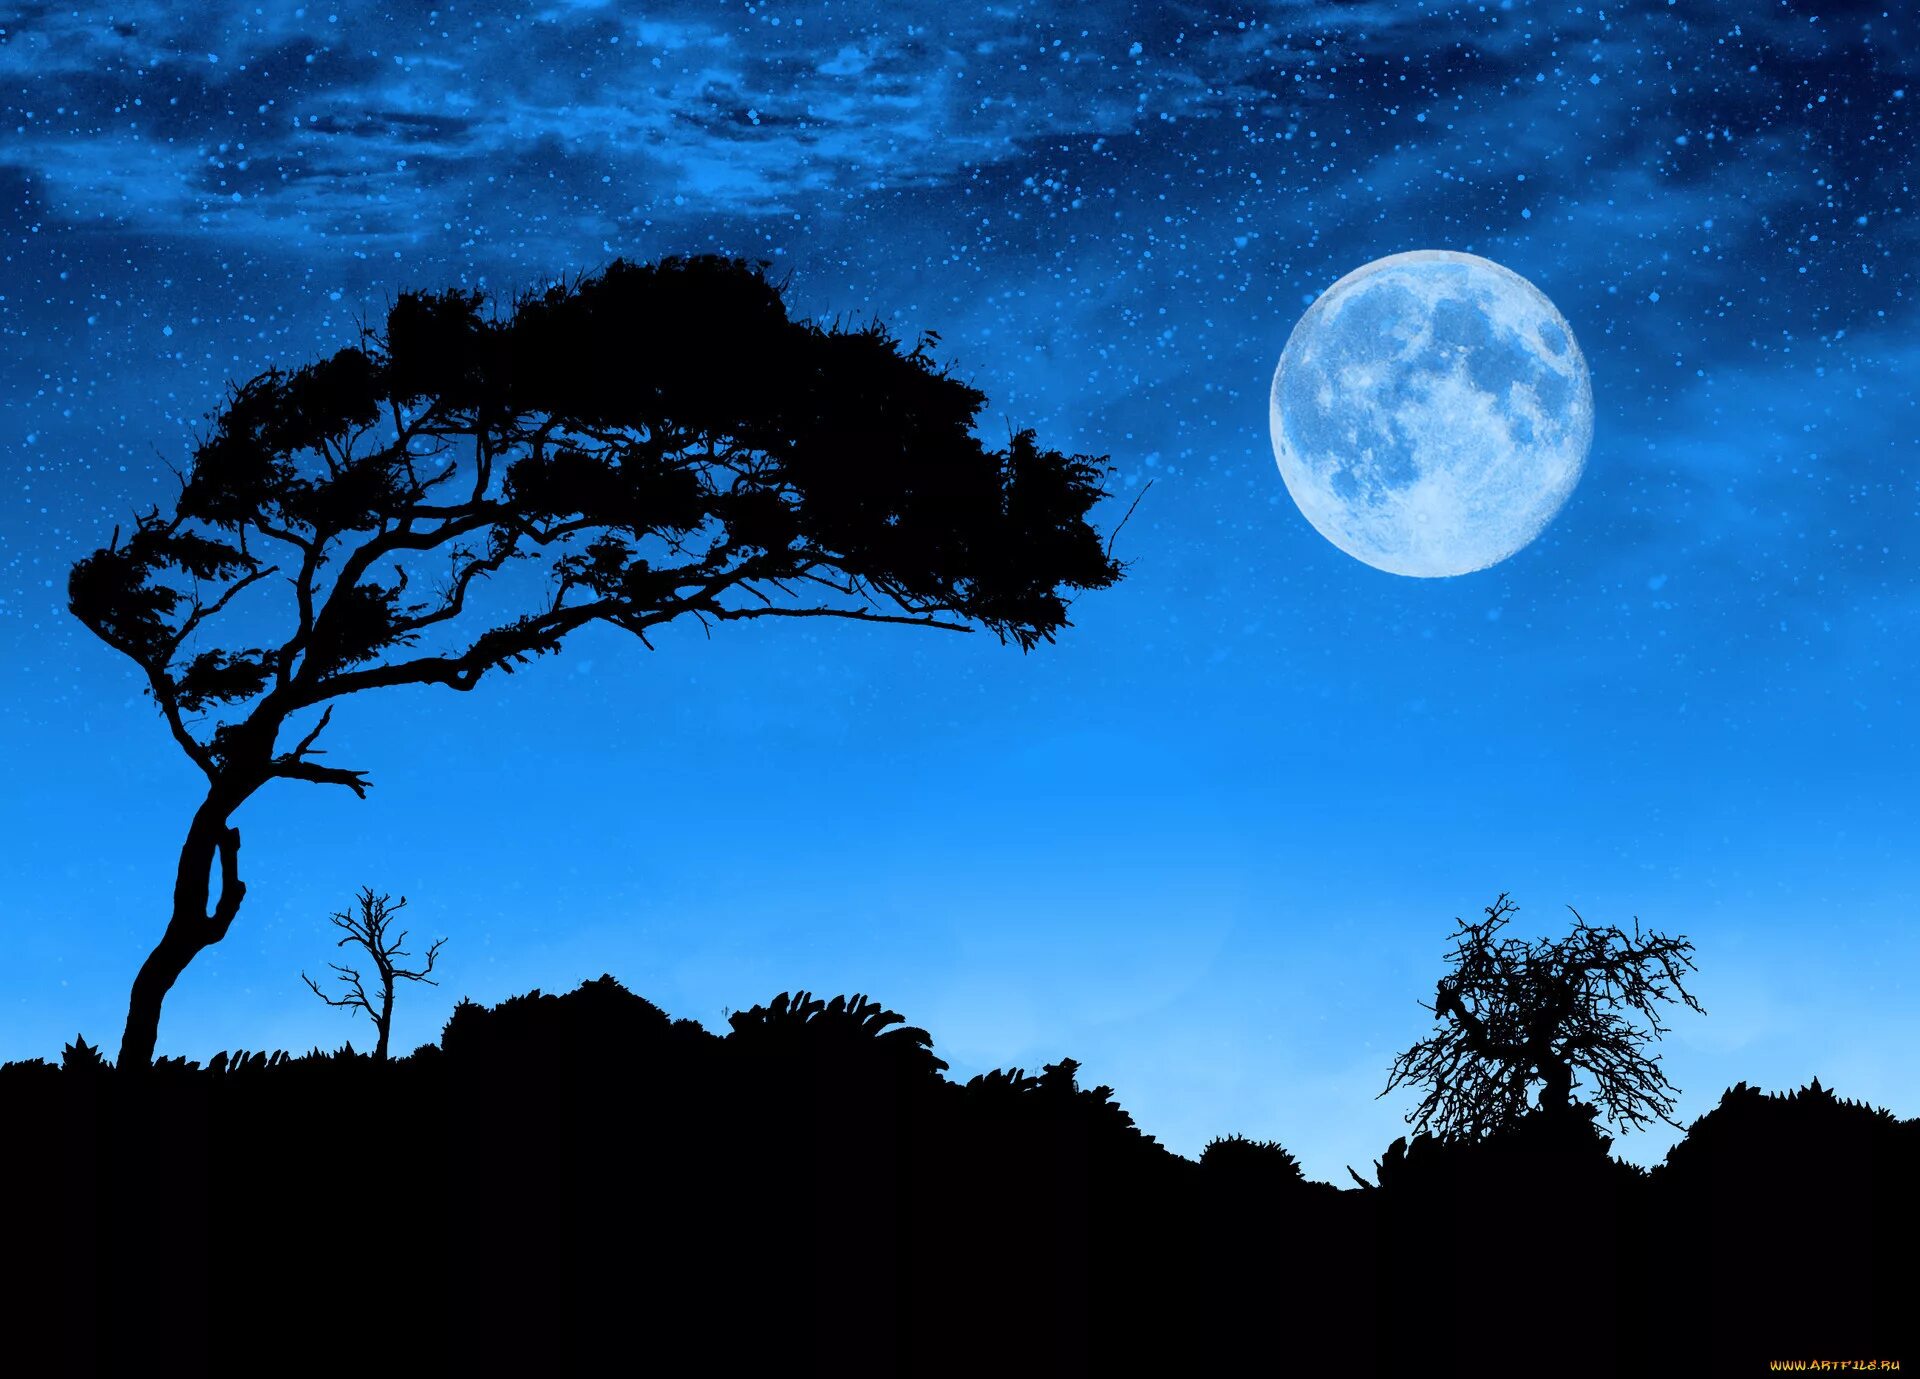 Какой лунной ночью. Лунная ночь. Пейзаж с луной. Ночной пейзаж с луной. Пейзаж лунной ночи и дерева.